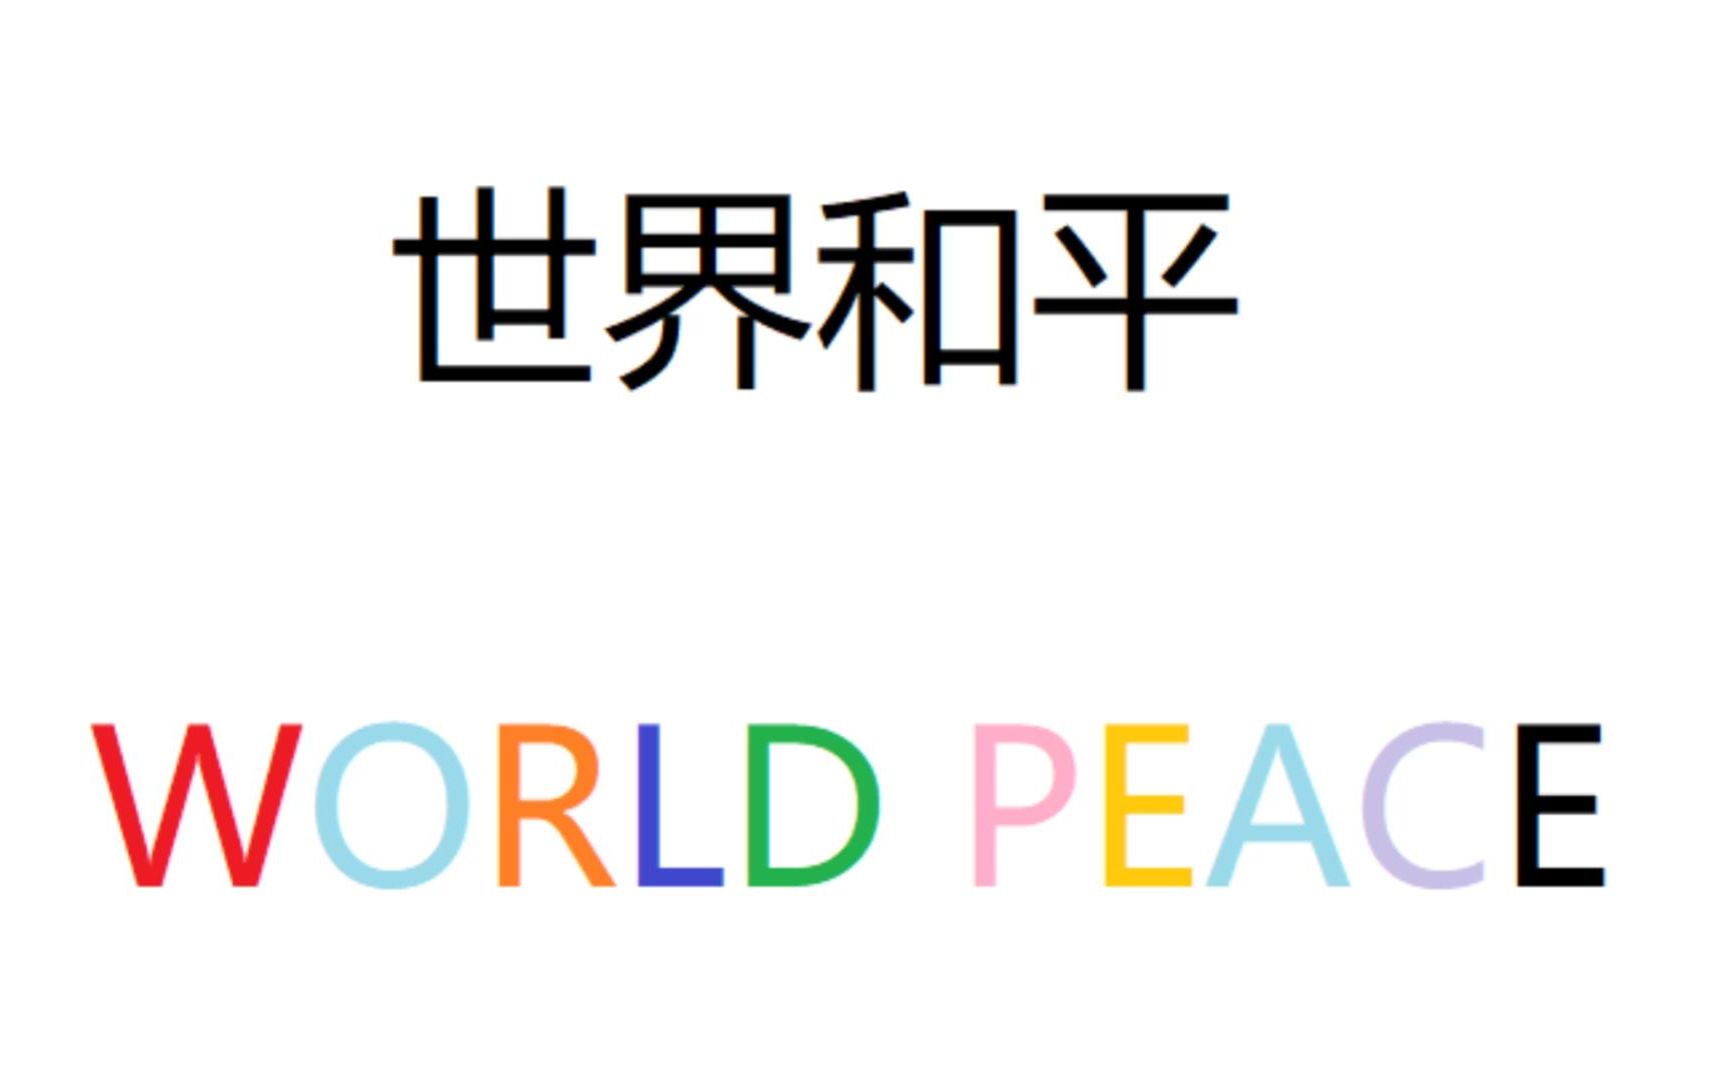 世界和平四字图片高清图片